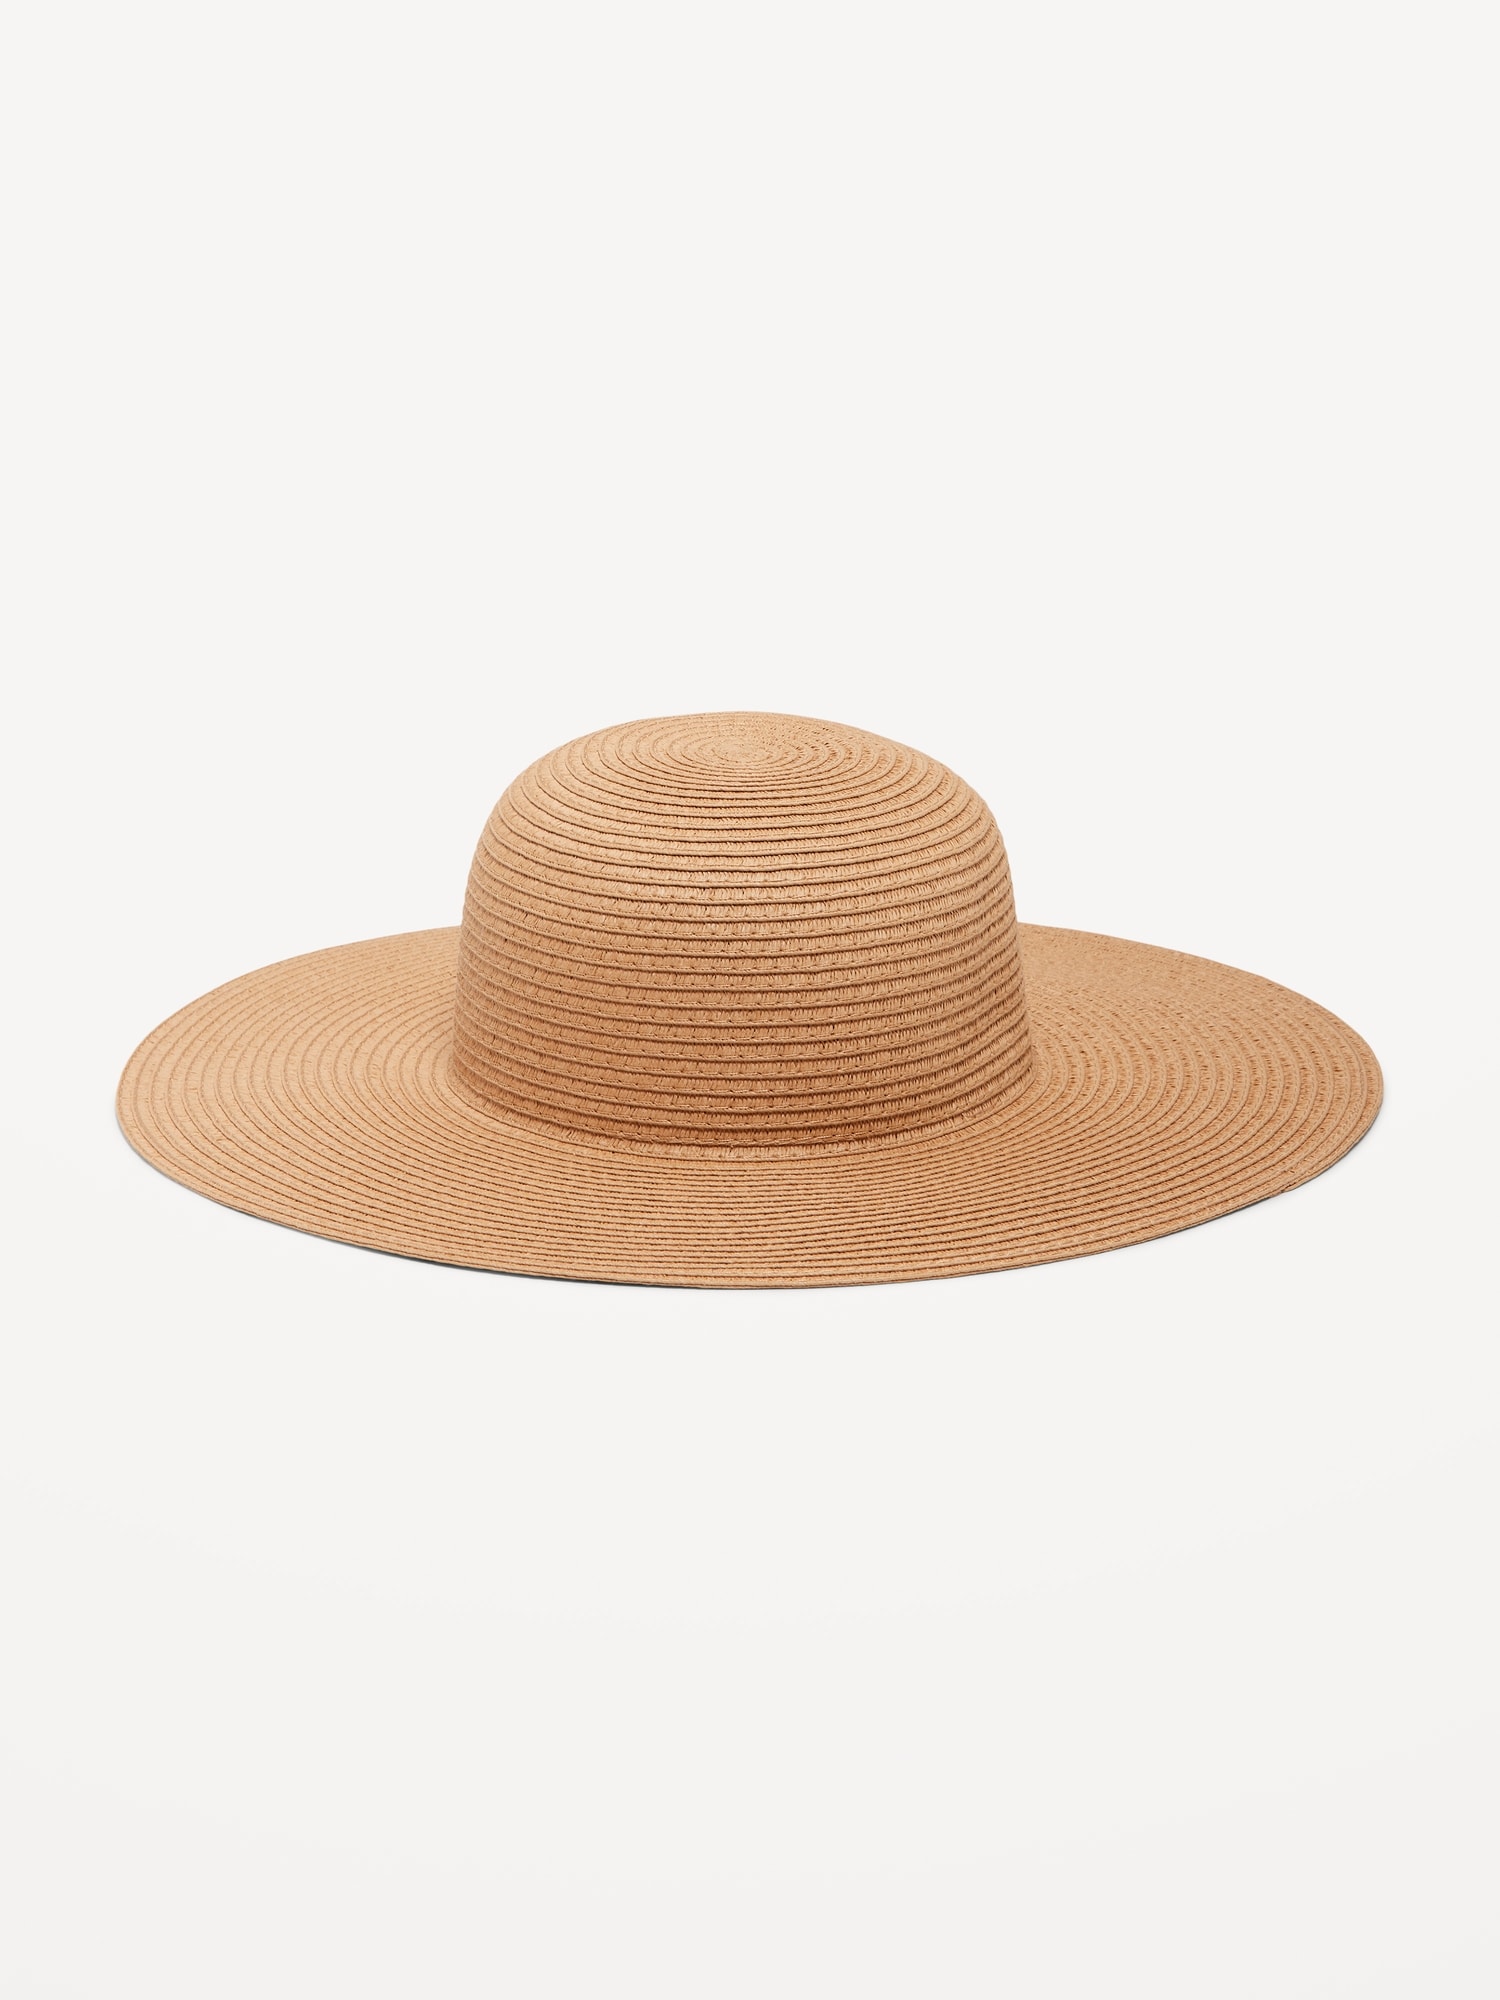 wide brim sun hats for women Cheap online - OFF 65%